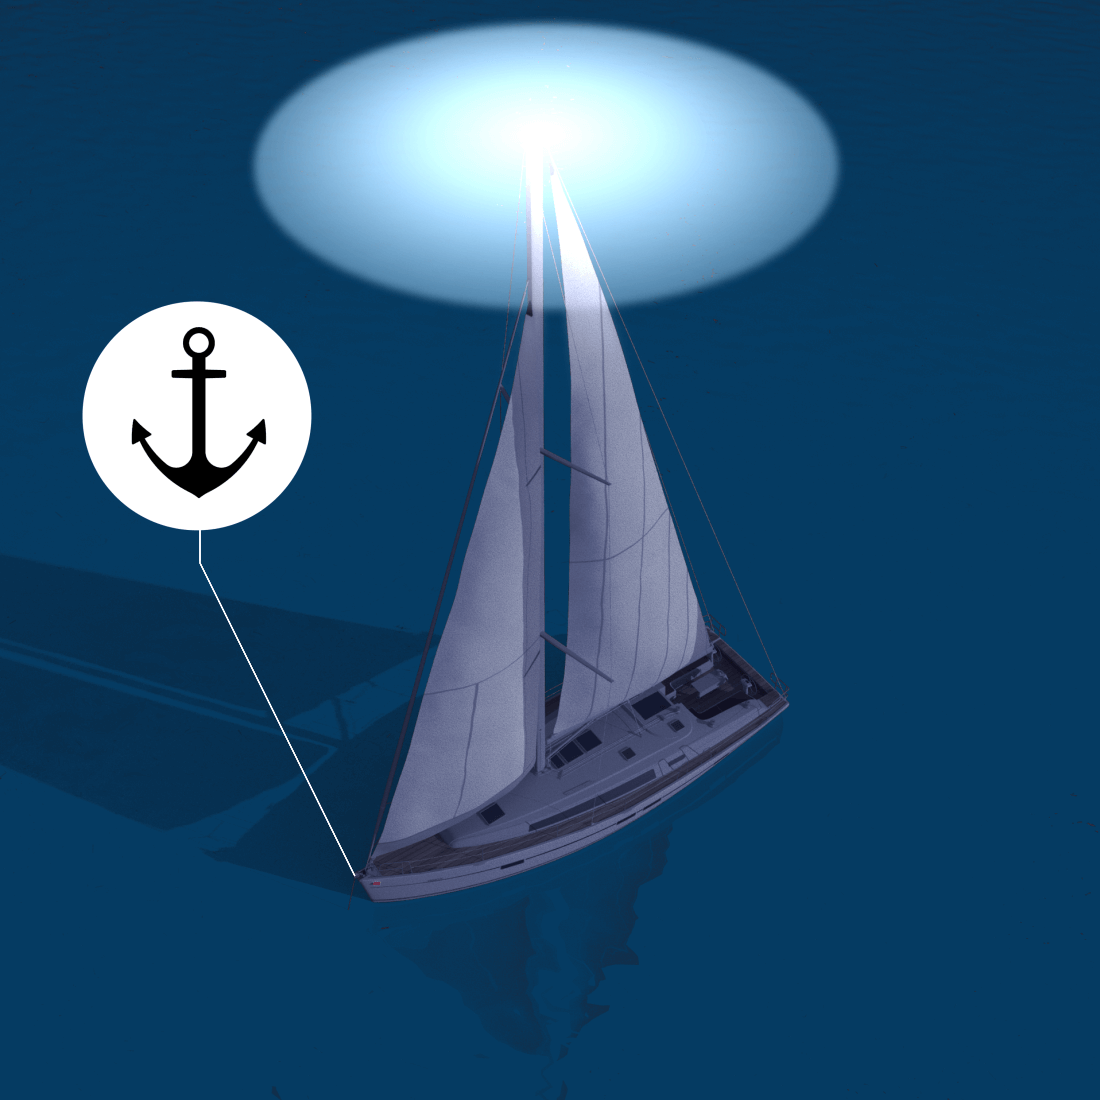 Anchored sailing boat - navigation lights